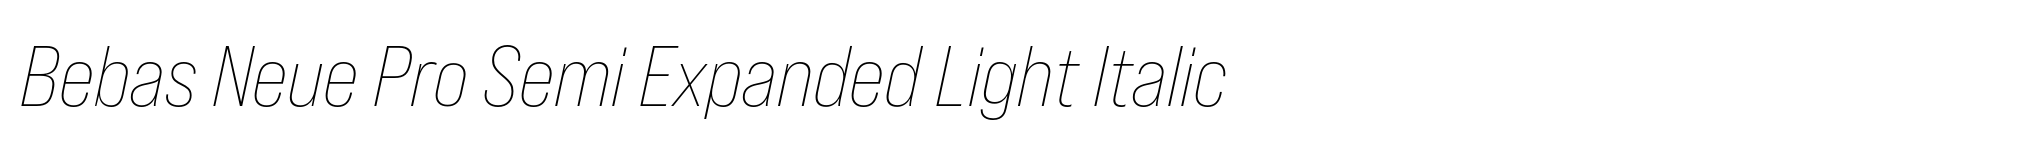 Bebas Neue Pro Semi Expanded Light Italic image